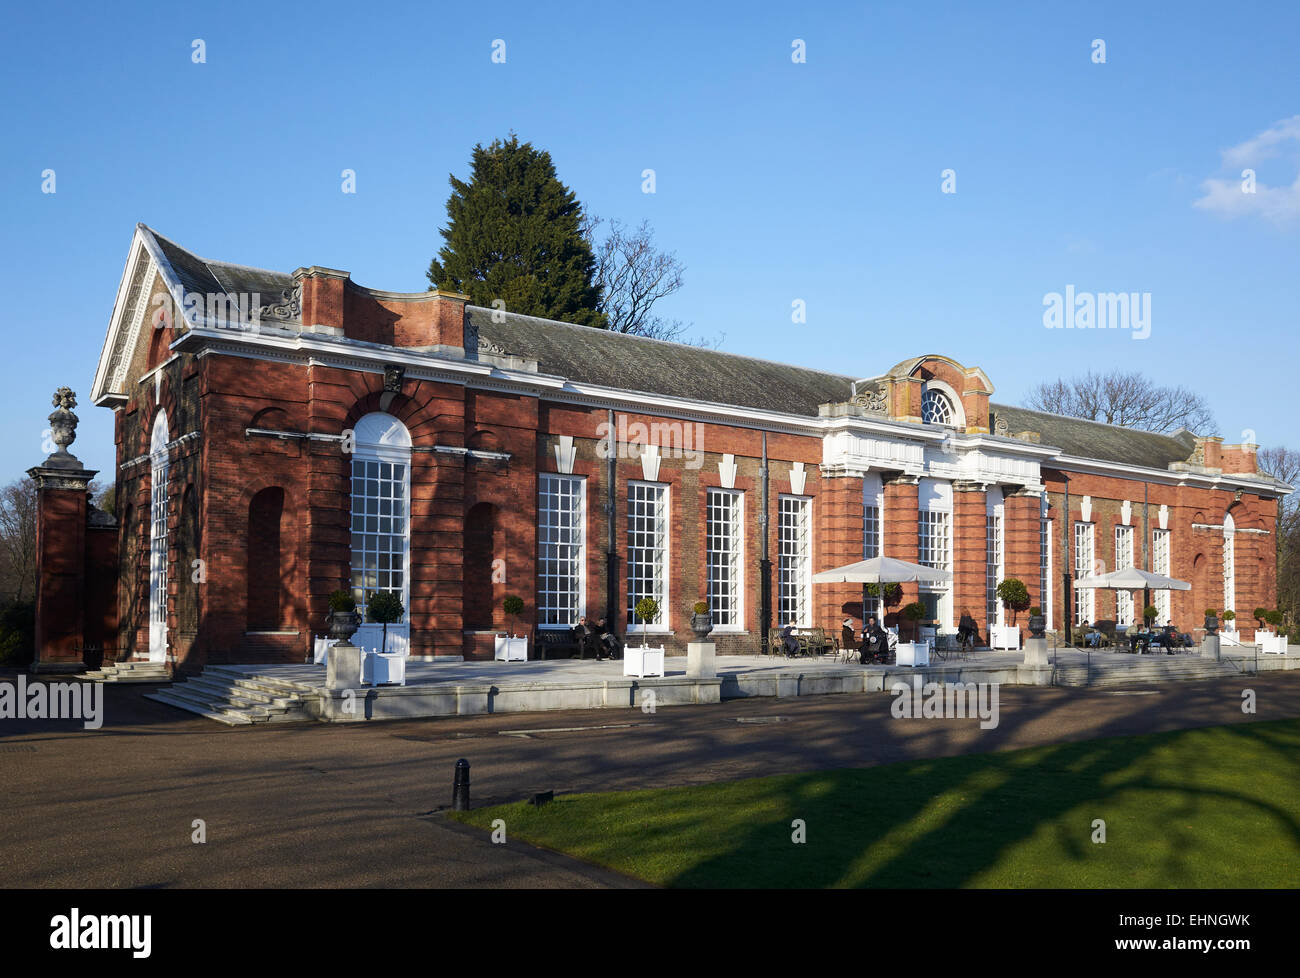 The Orangery, Kensington Gardens Stock Photo